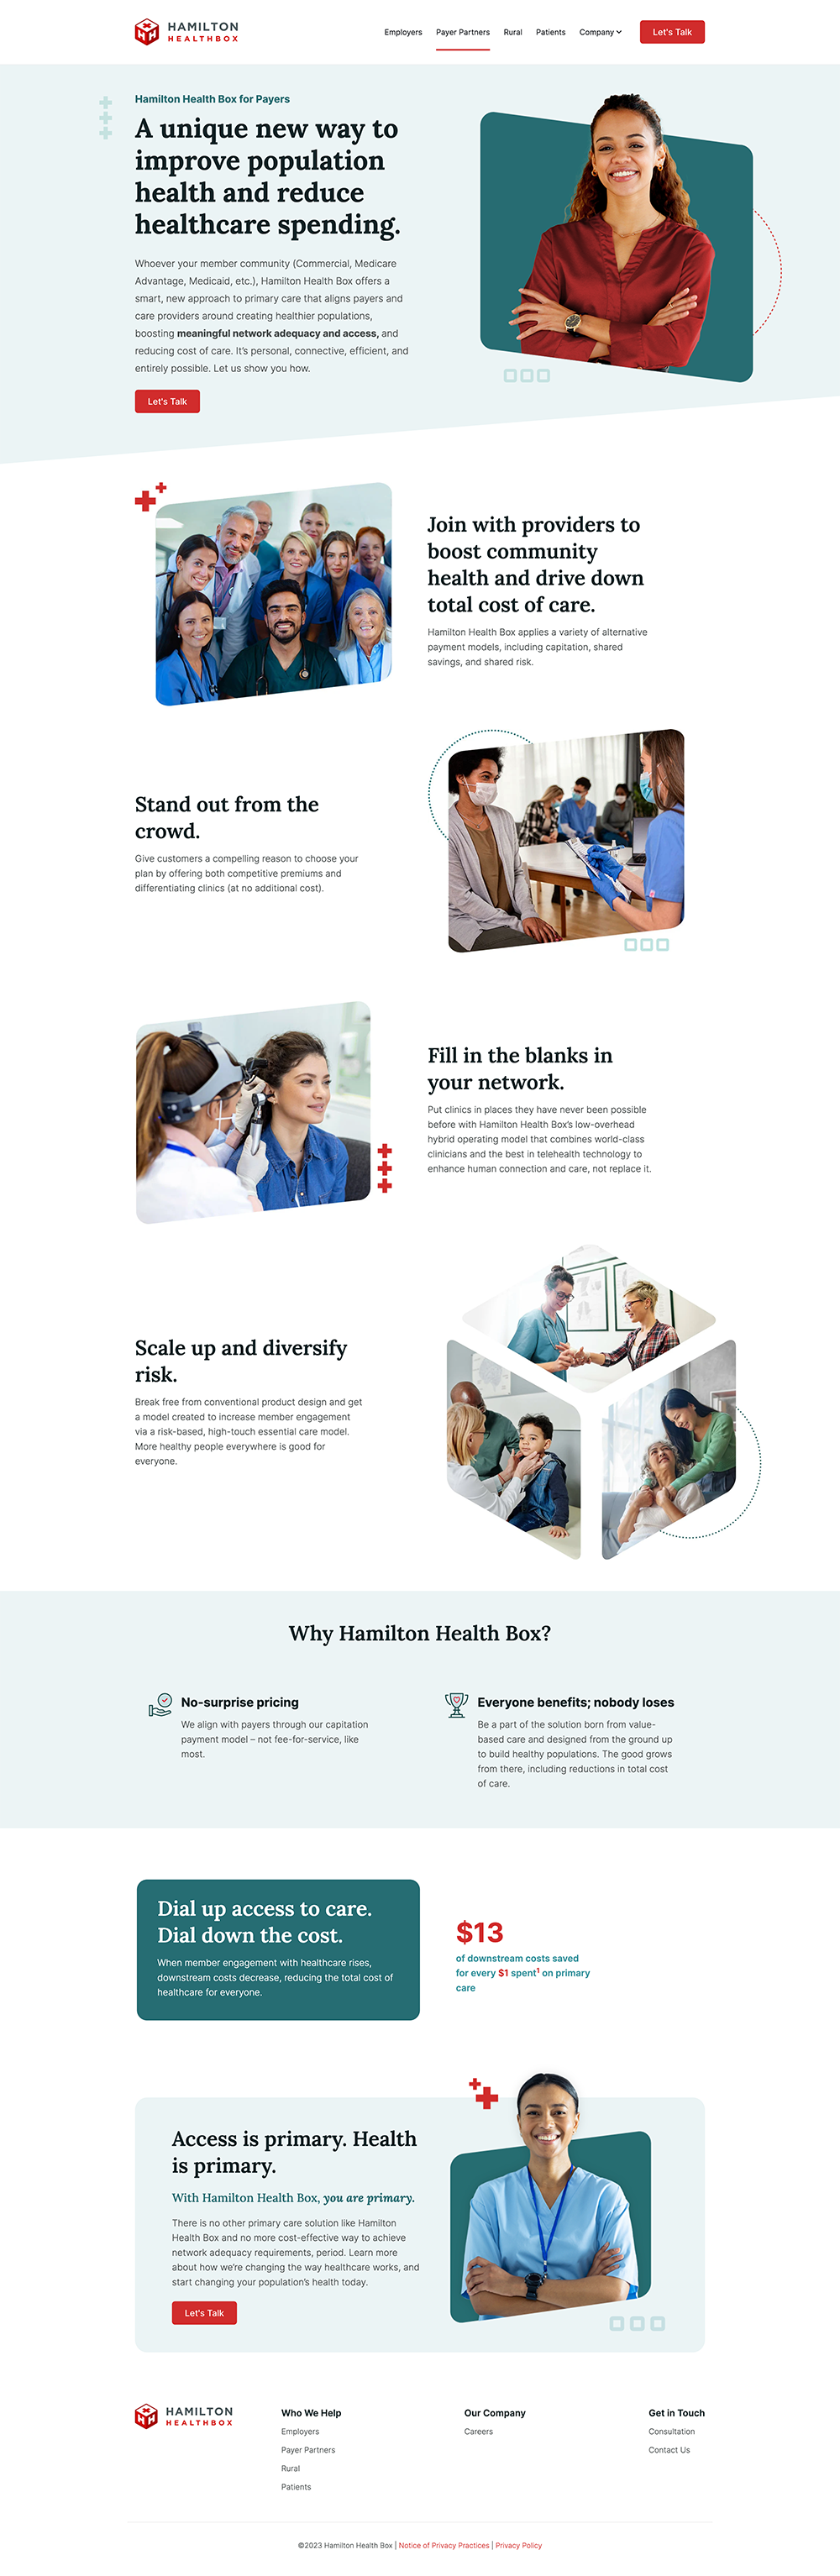 Hamilton Health Box | Payer Partners